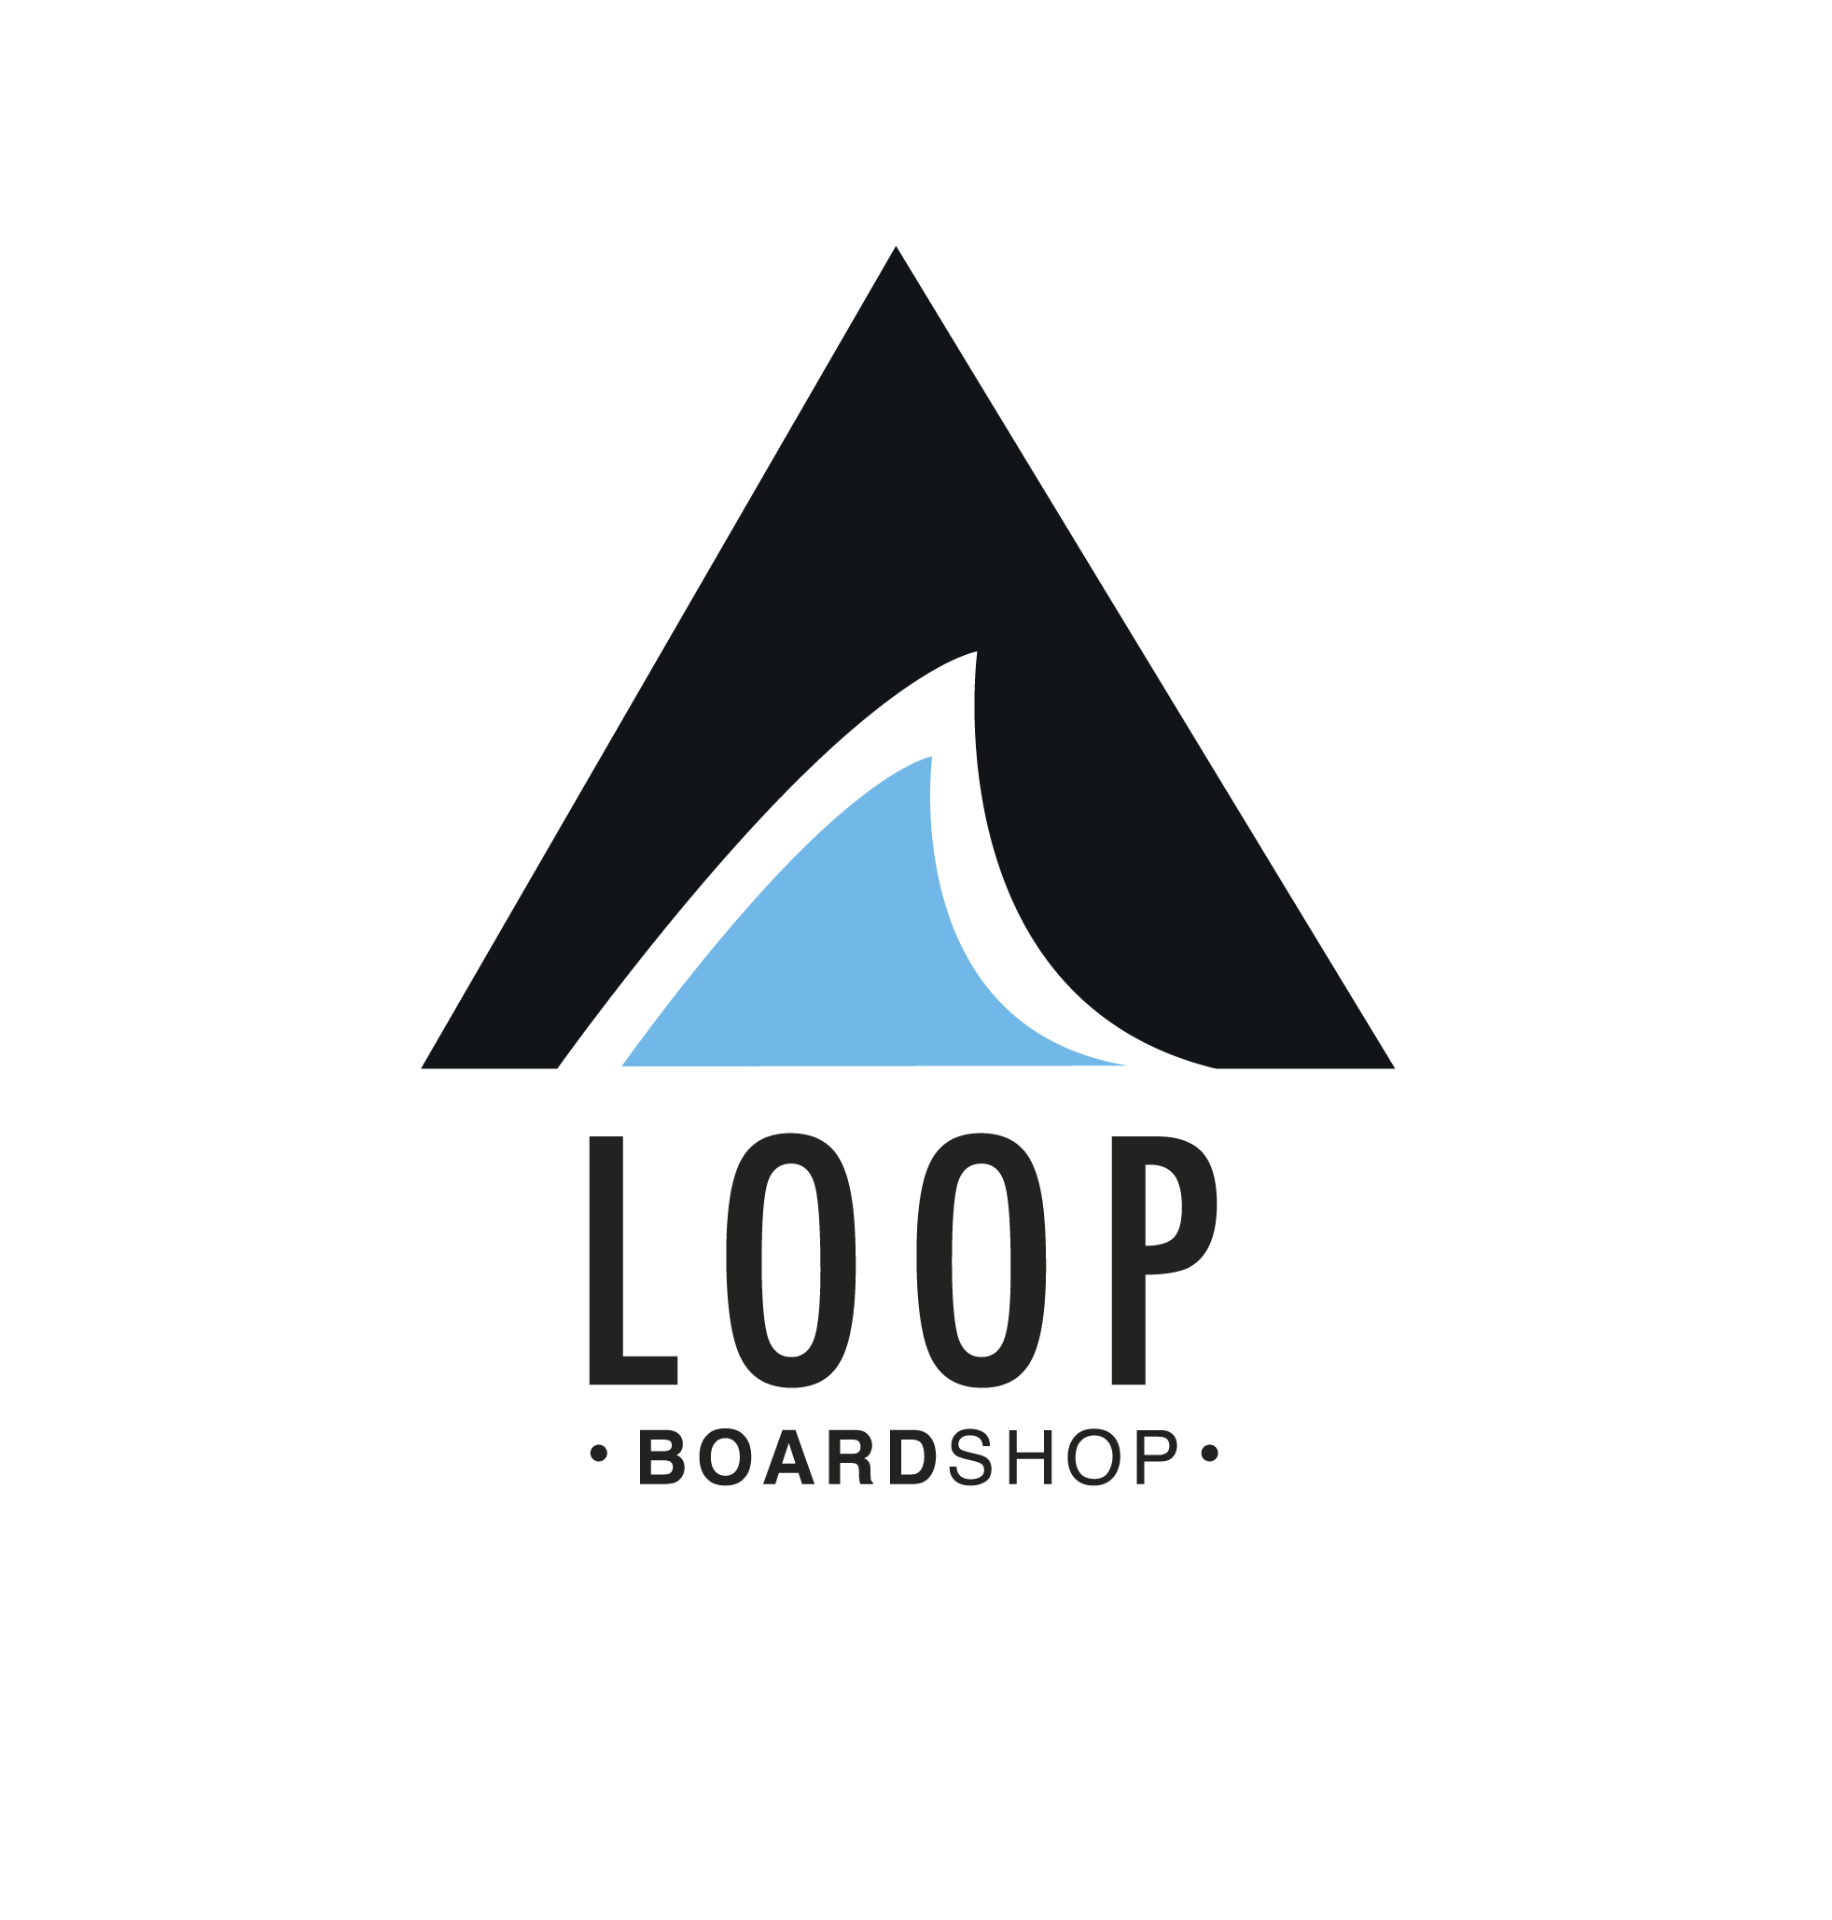 LOOP BOARDSHOP